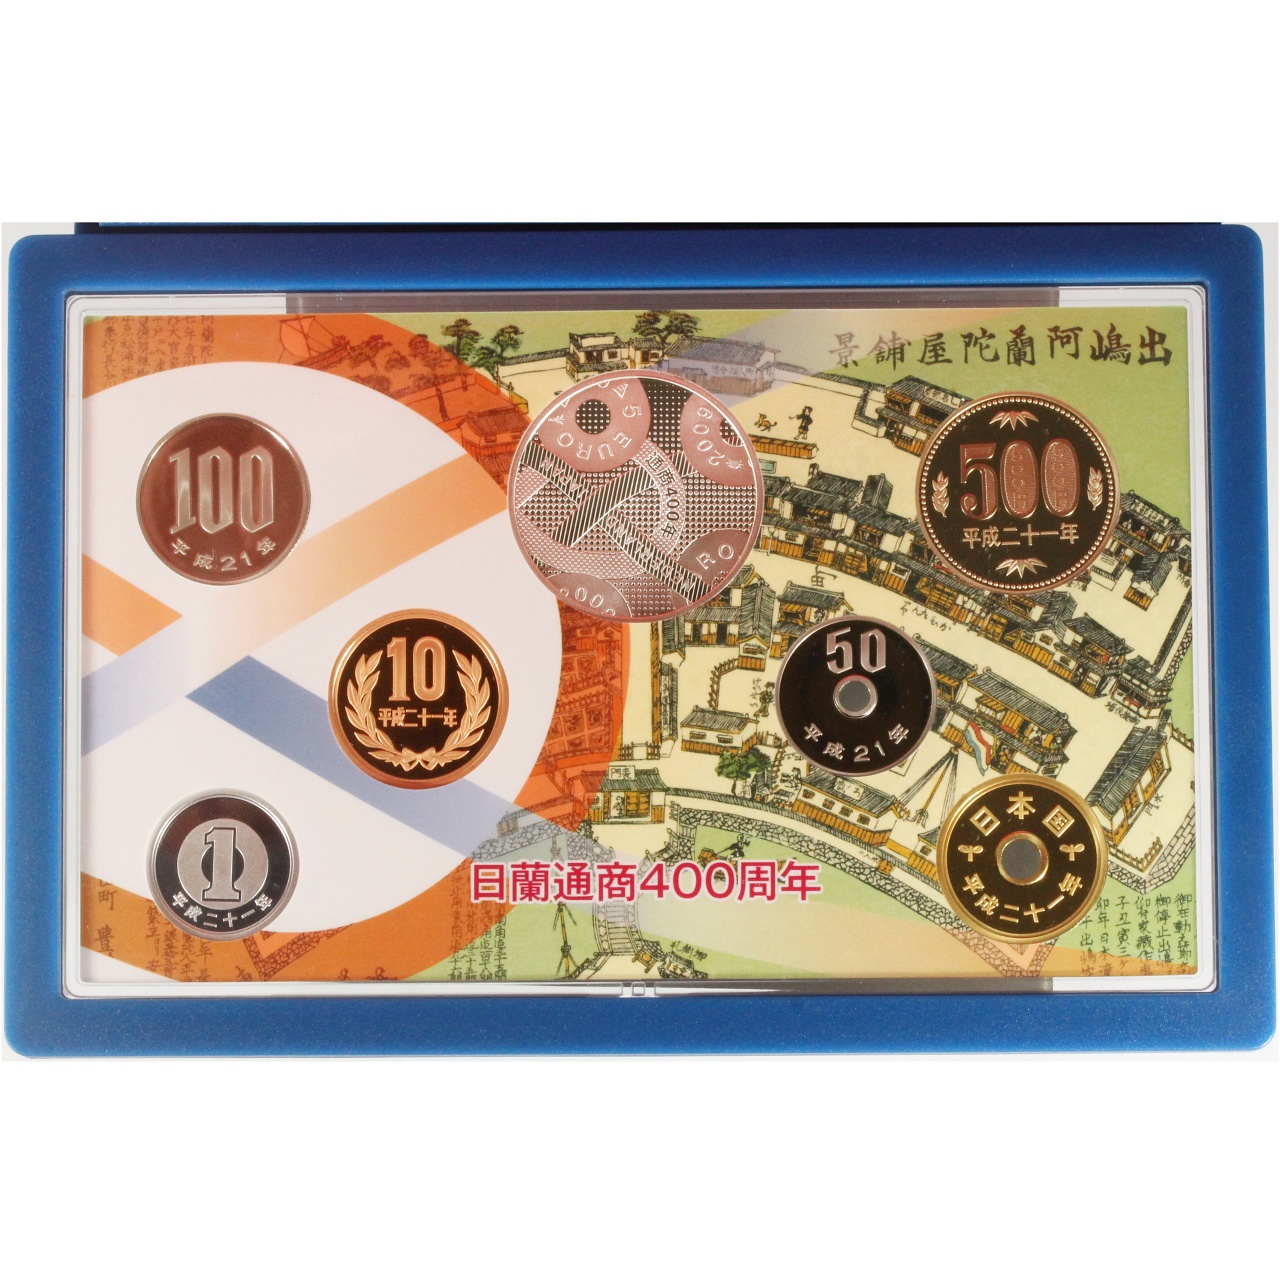 日蘭通商400周年 2009プルーフ貨幣セット 王立オランダ造幣局製 5 